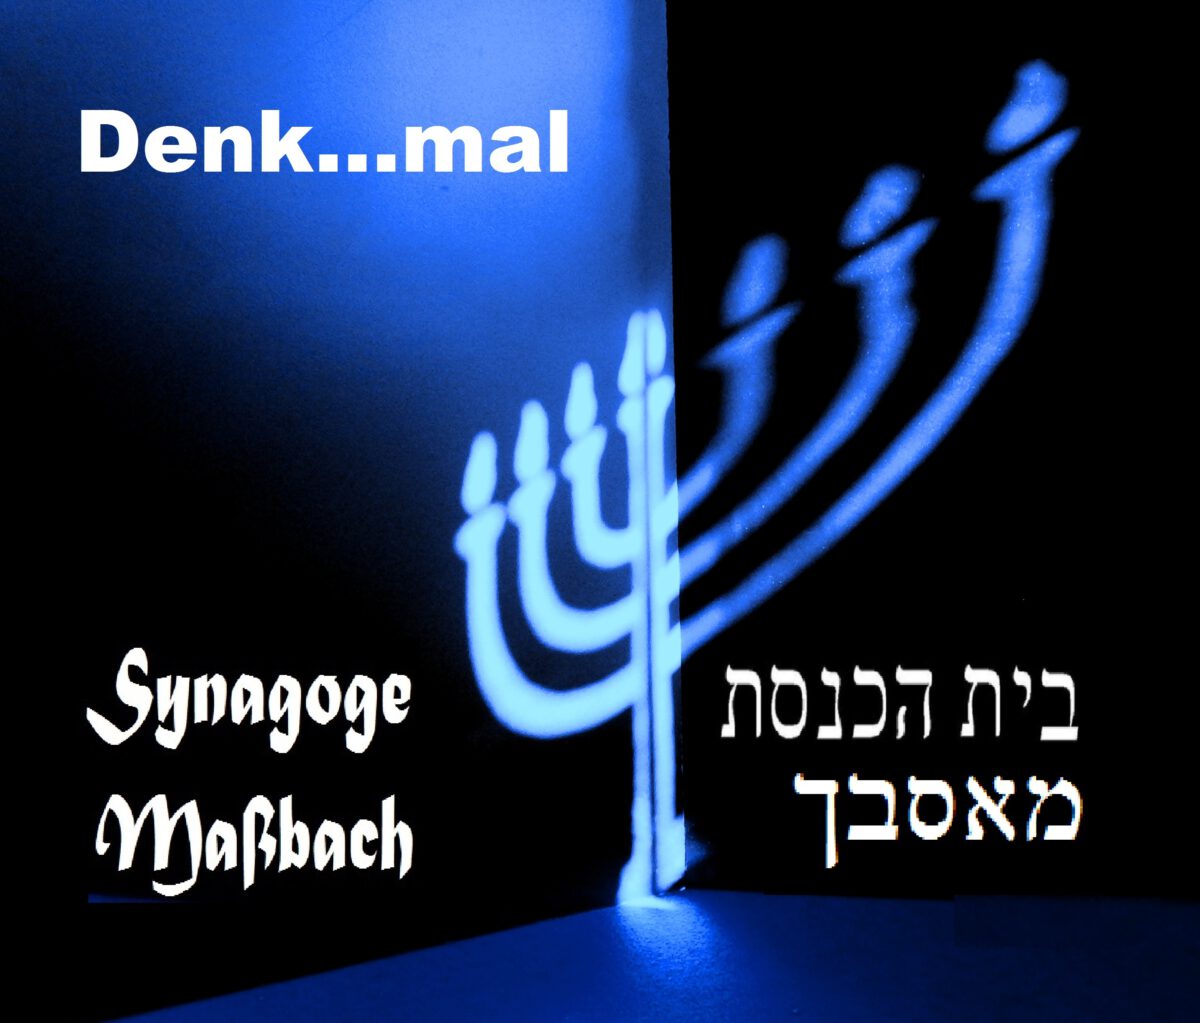 Bild zur Synagoge Maßbach